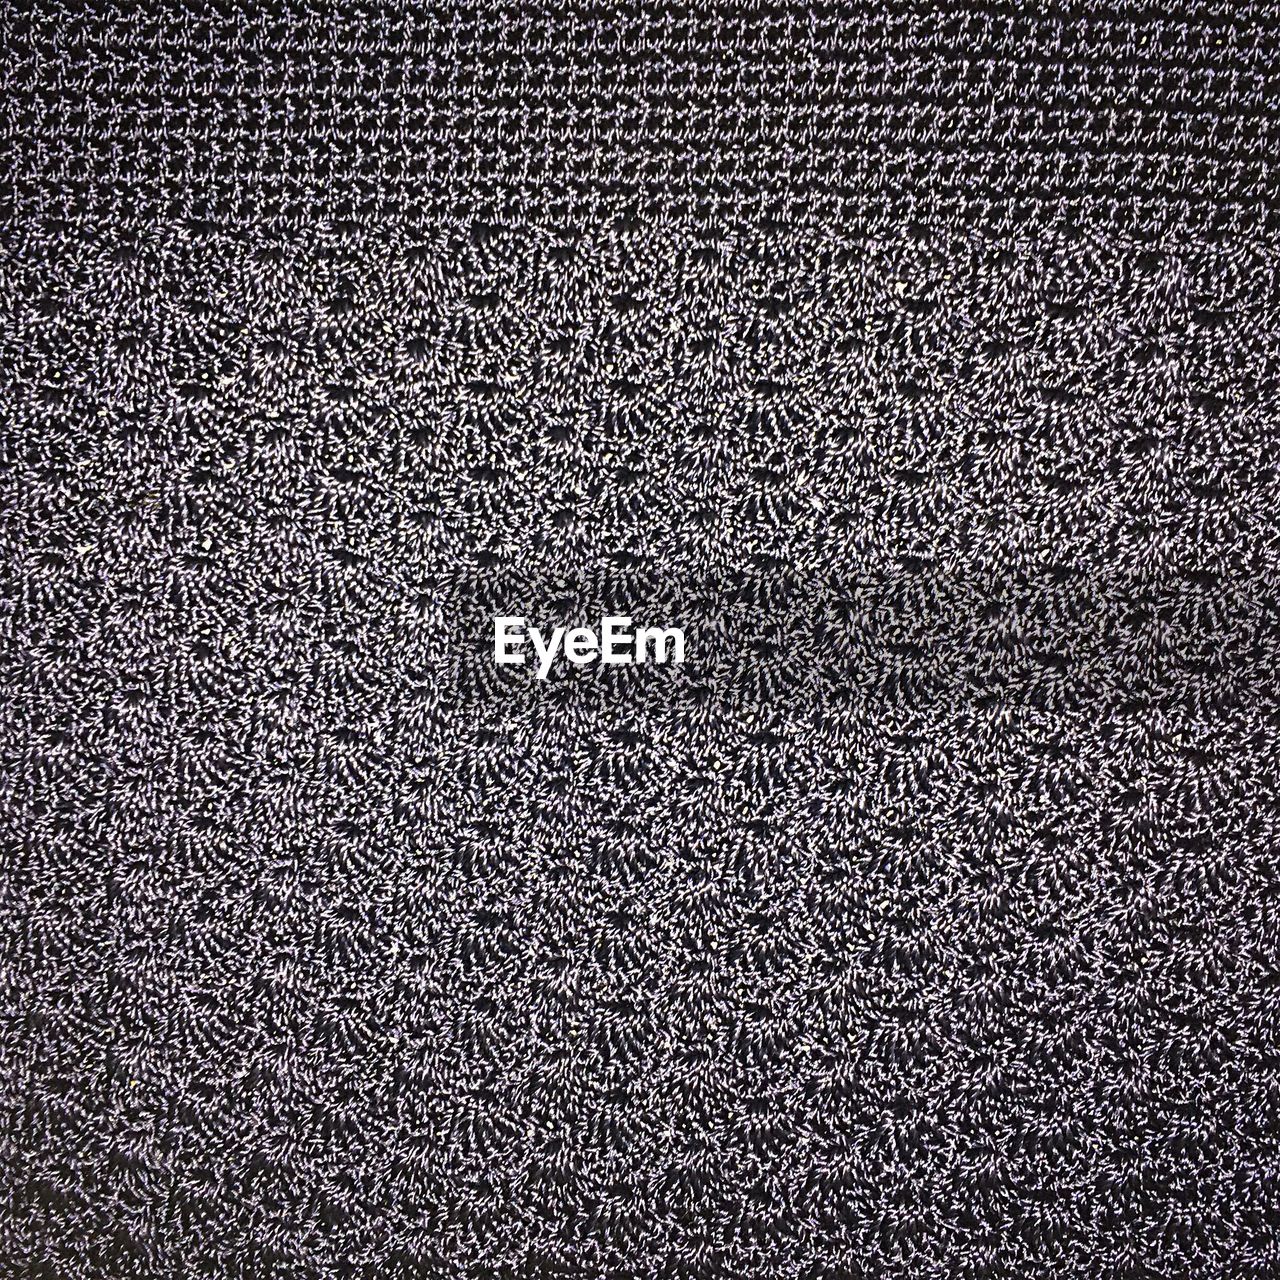 Full frame shot of knitted fabric